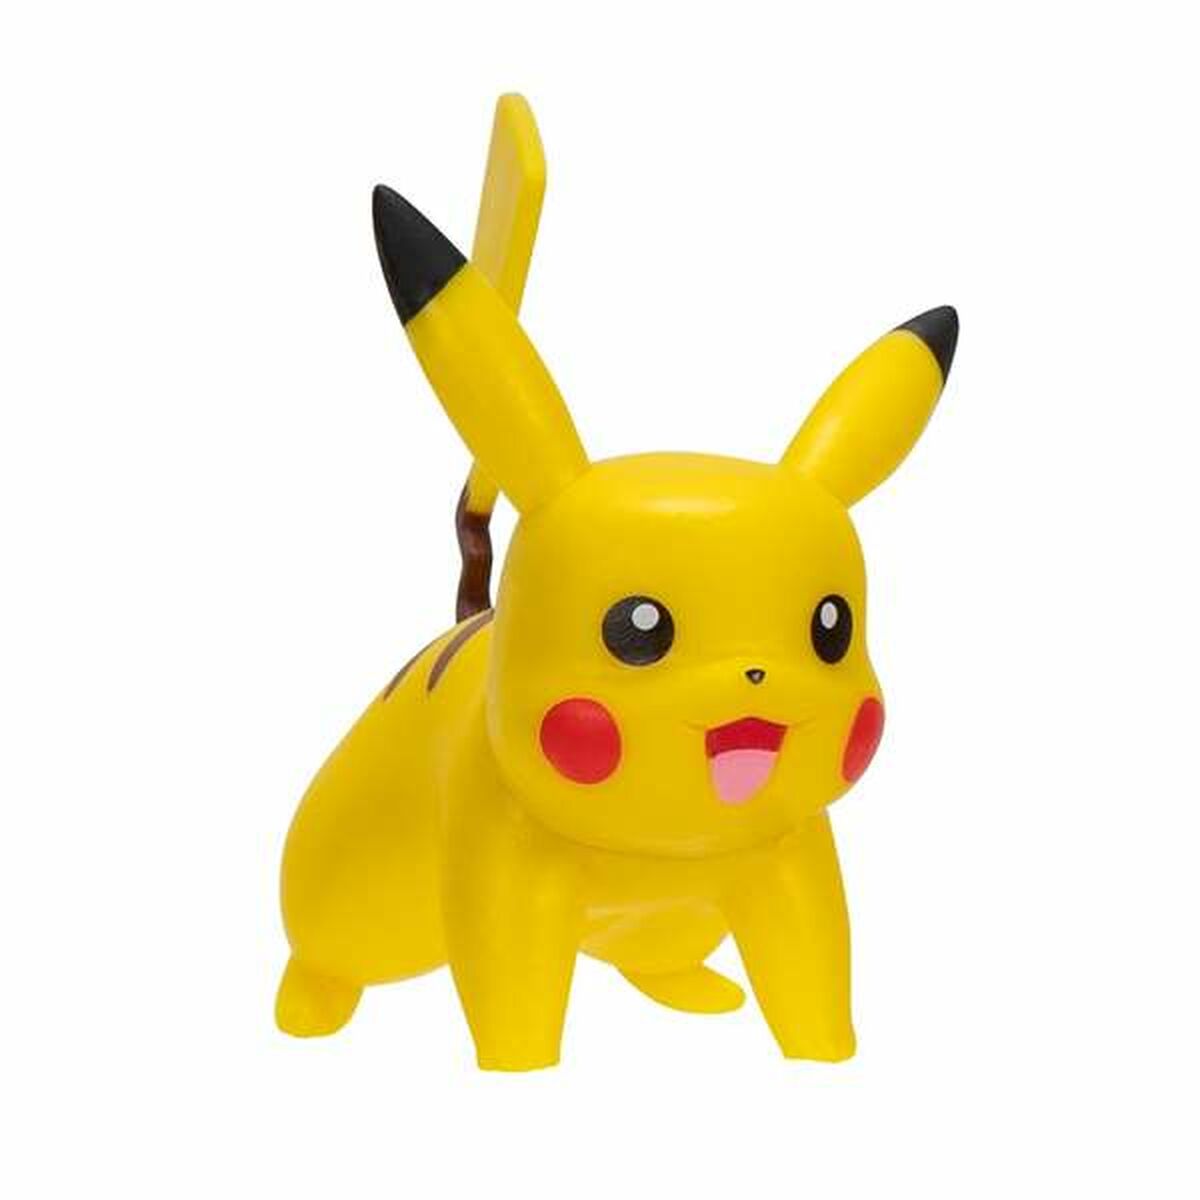 Sats med figurer Pokémon 5 cm 2 Delar-Leksaker och spel, Dockor och tillbehör-Pokémon-peaceofhome.se